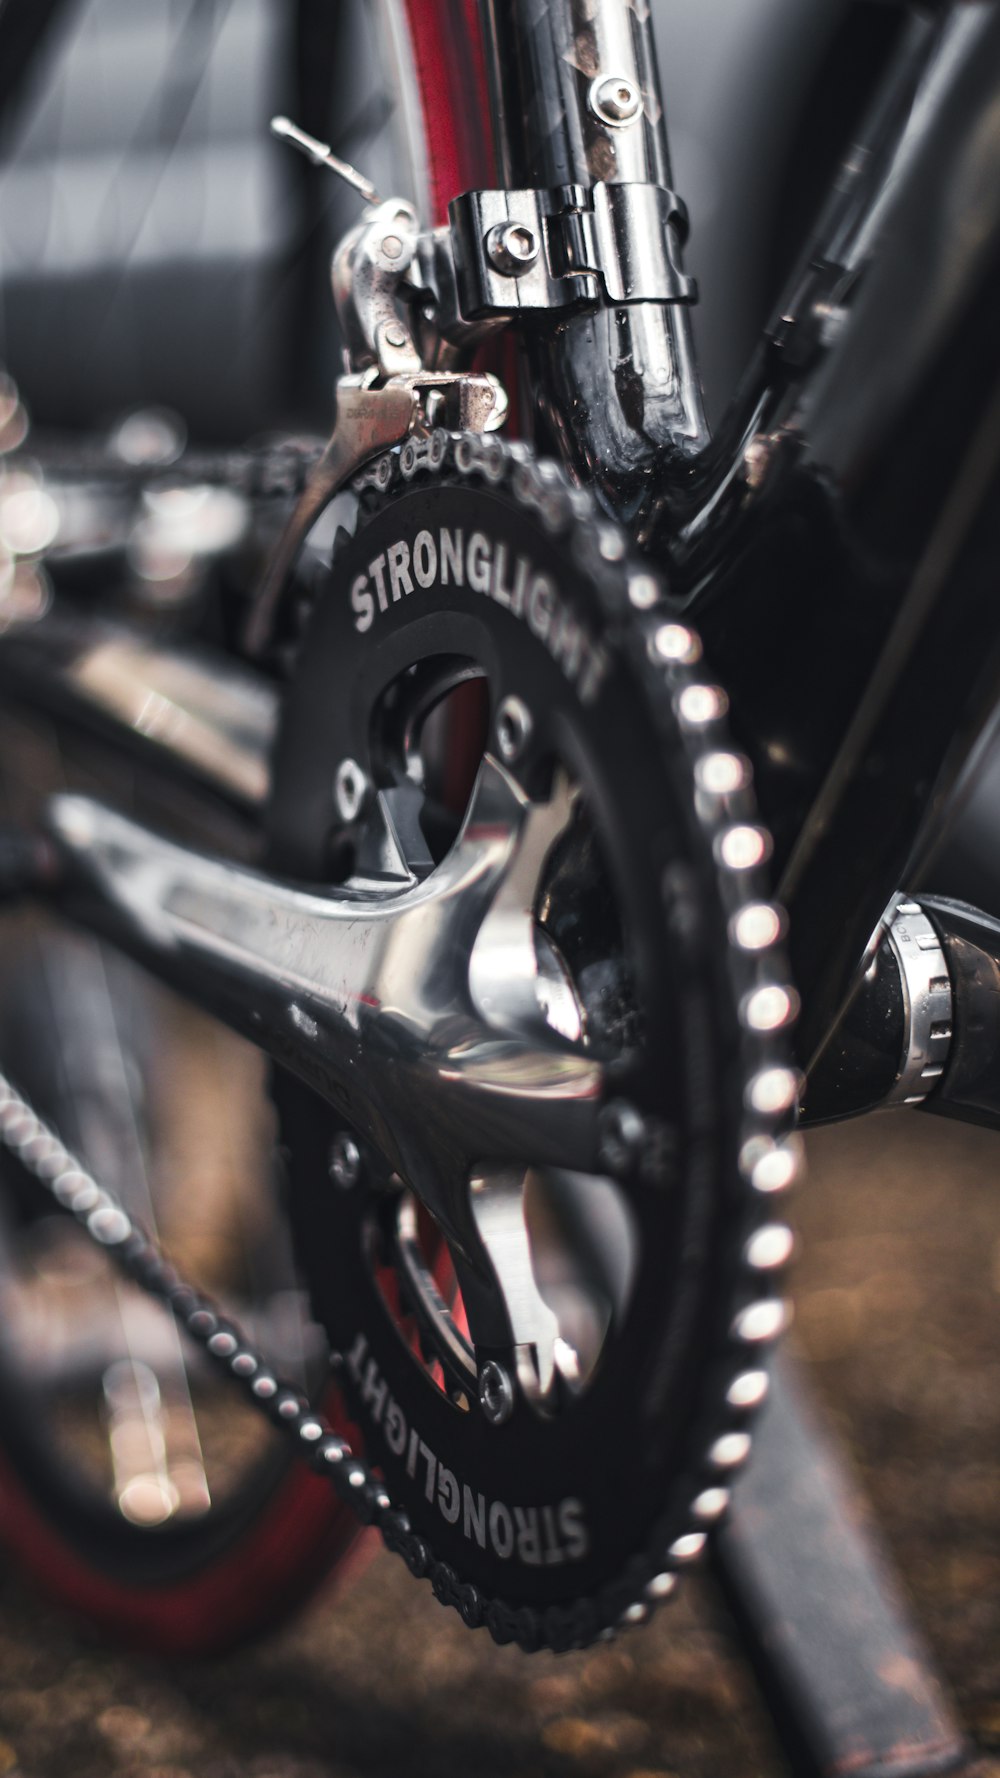 piñón de bicicleta Stronglite negro